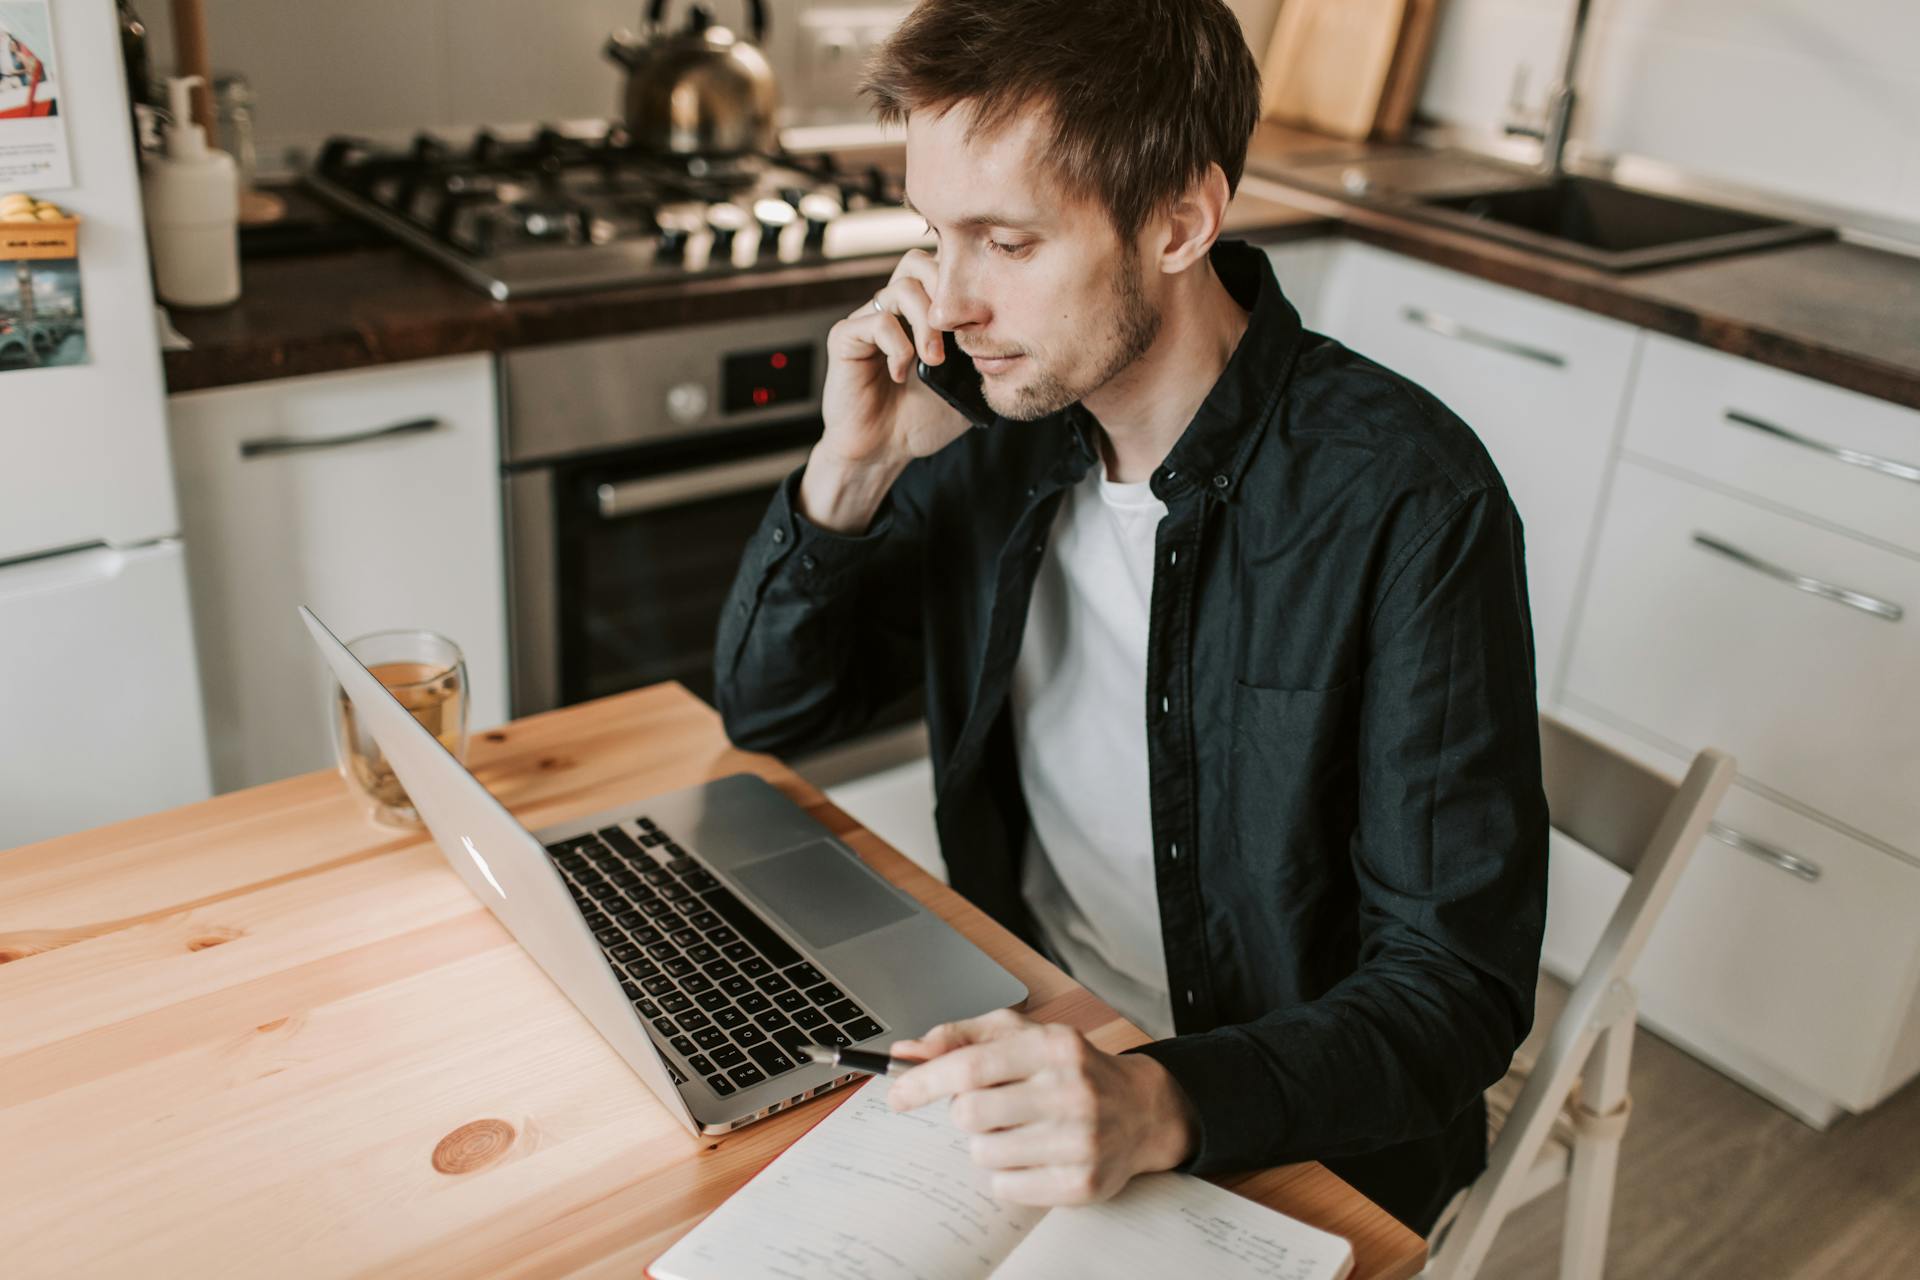 Un homme assis à une table de cuisine en train de passer un appel téléphonique | Source : Pexels